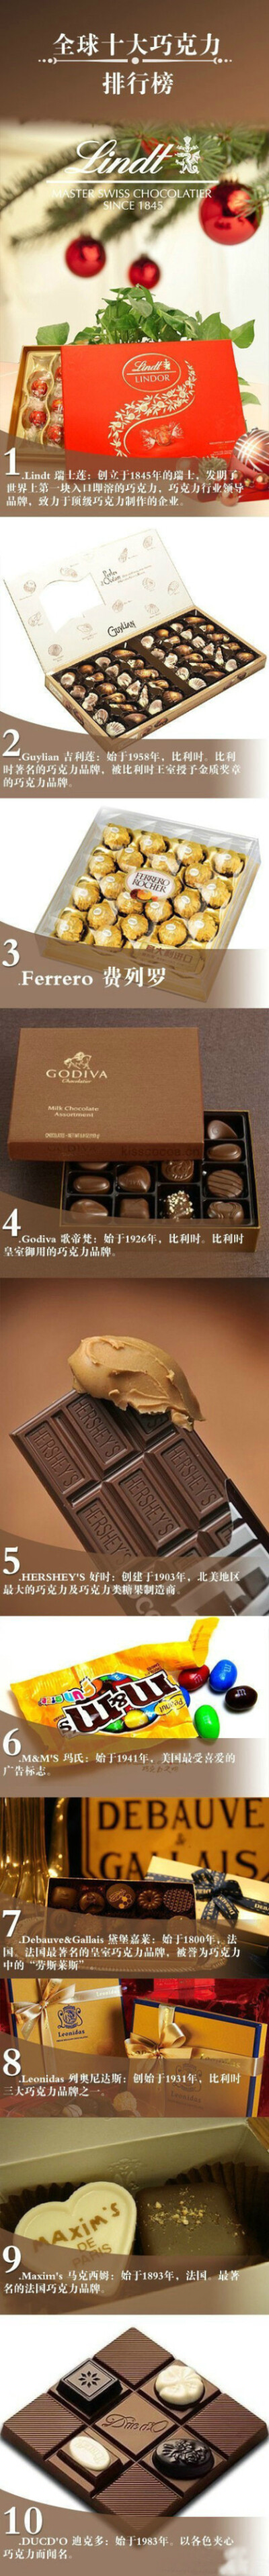 全球十大巧克力品牌排行榜